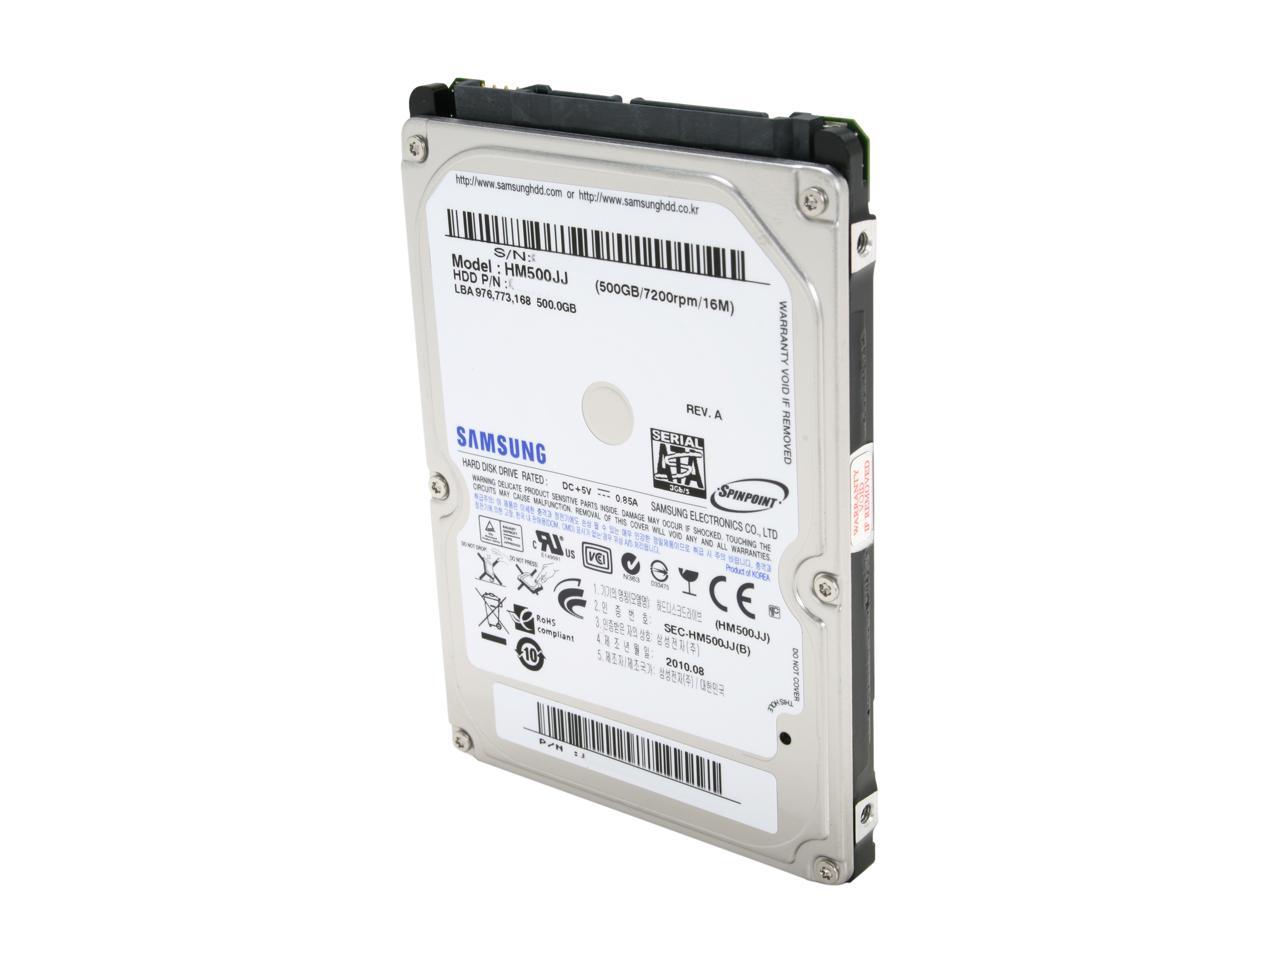 Recertified Samsung 320GB 7200rpm 16MB 2.5" SATA Hard Drive 